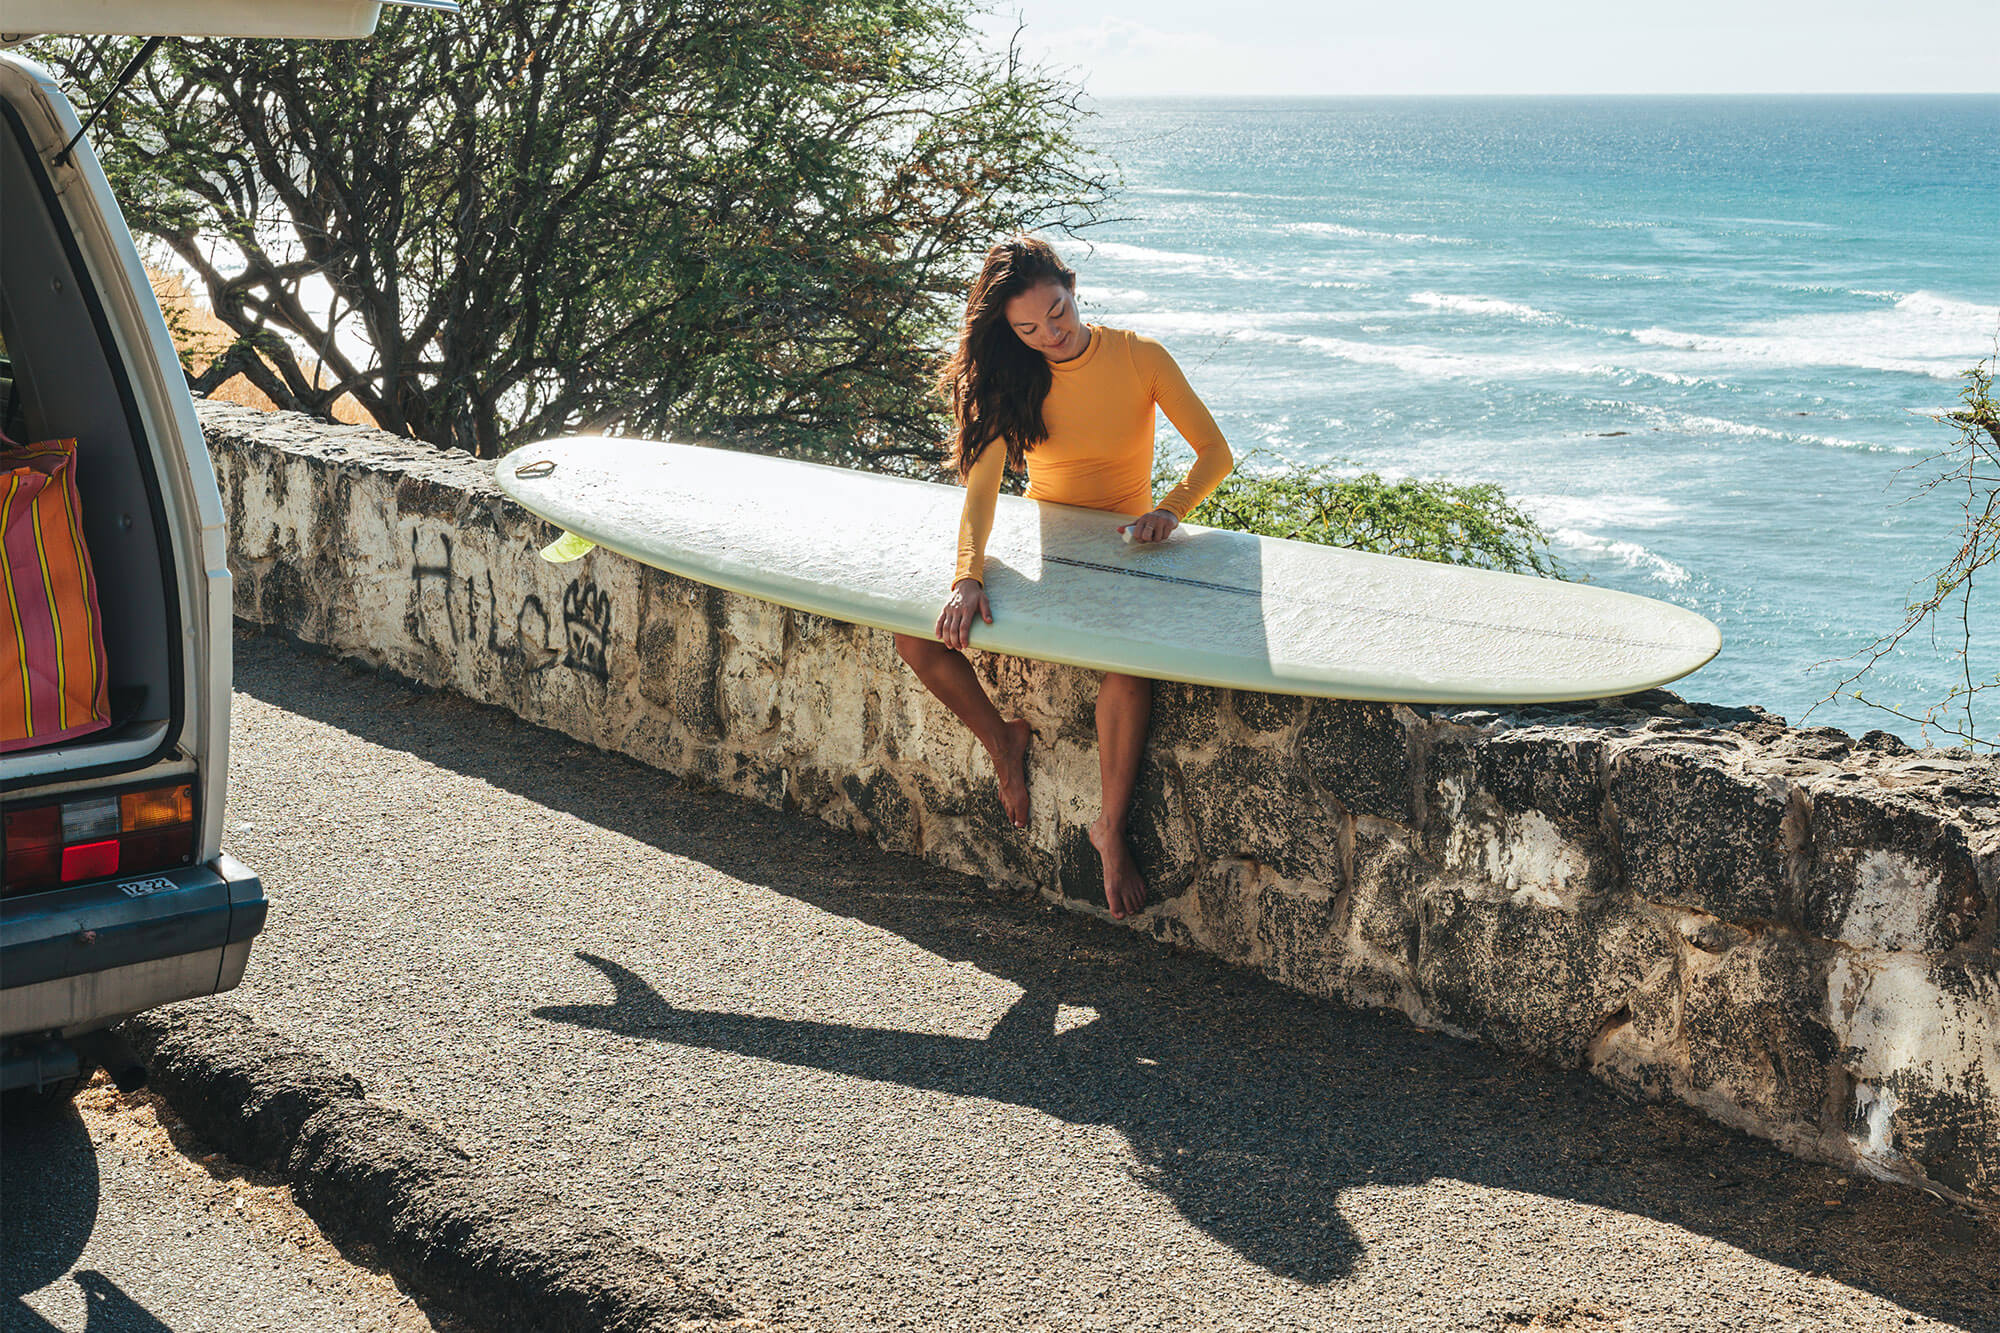 Woman waxing a Surfboard